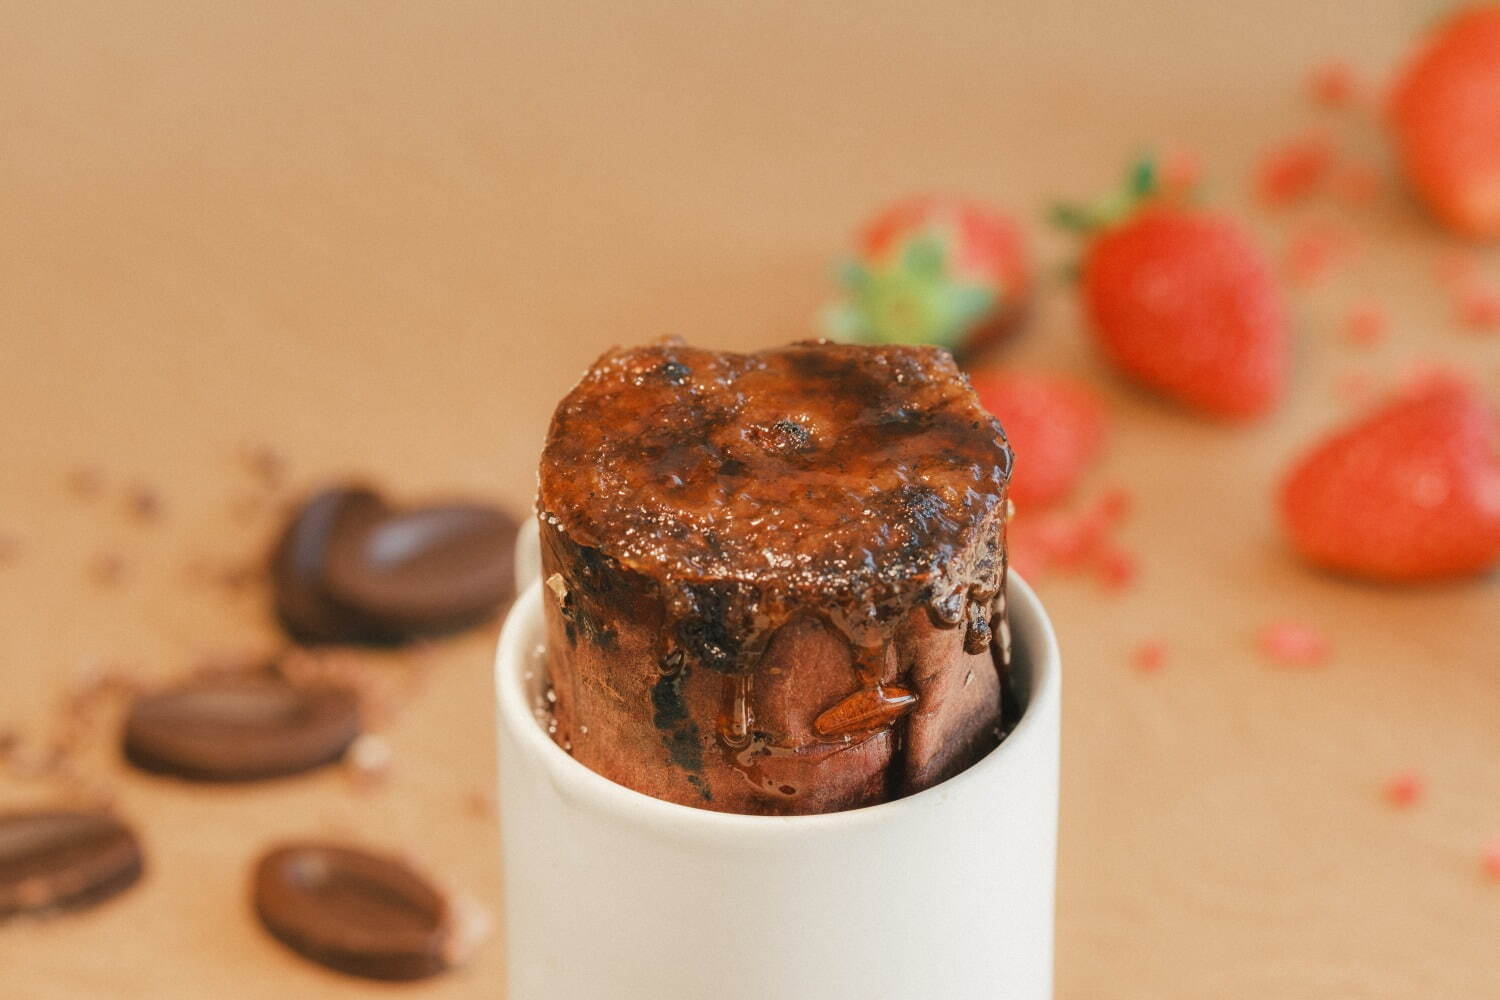 壺芋ブリュレ「ビターチョコレートクリーム」 850円